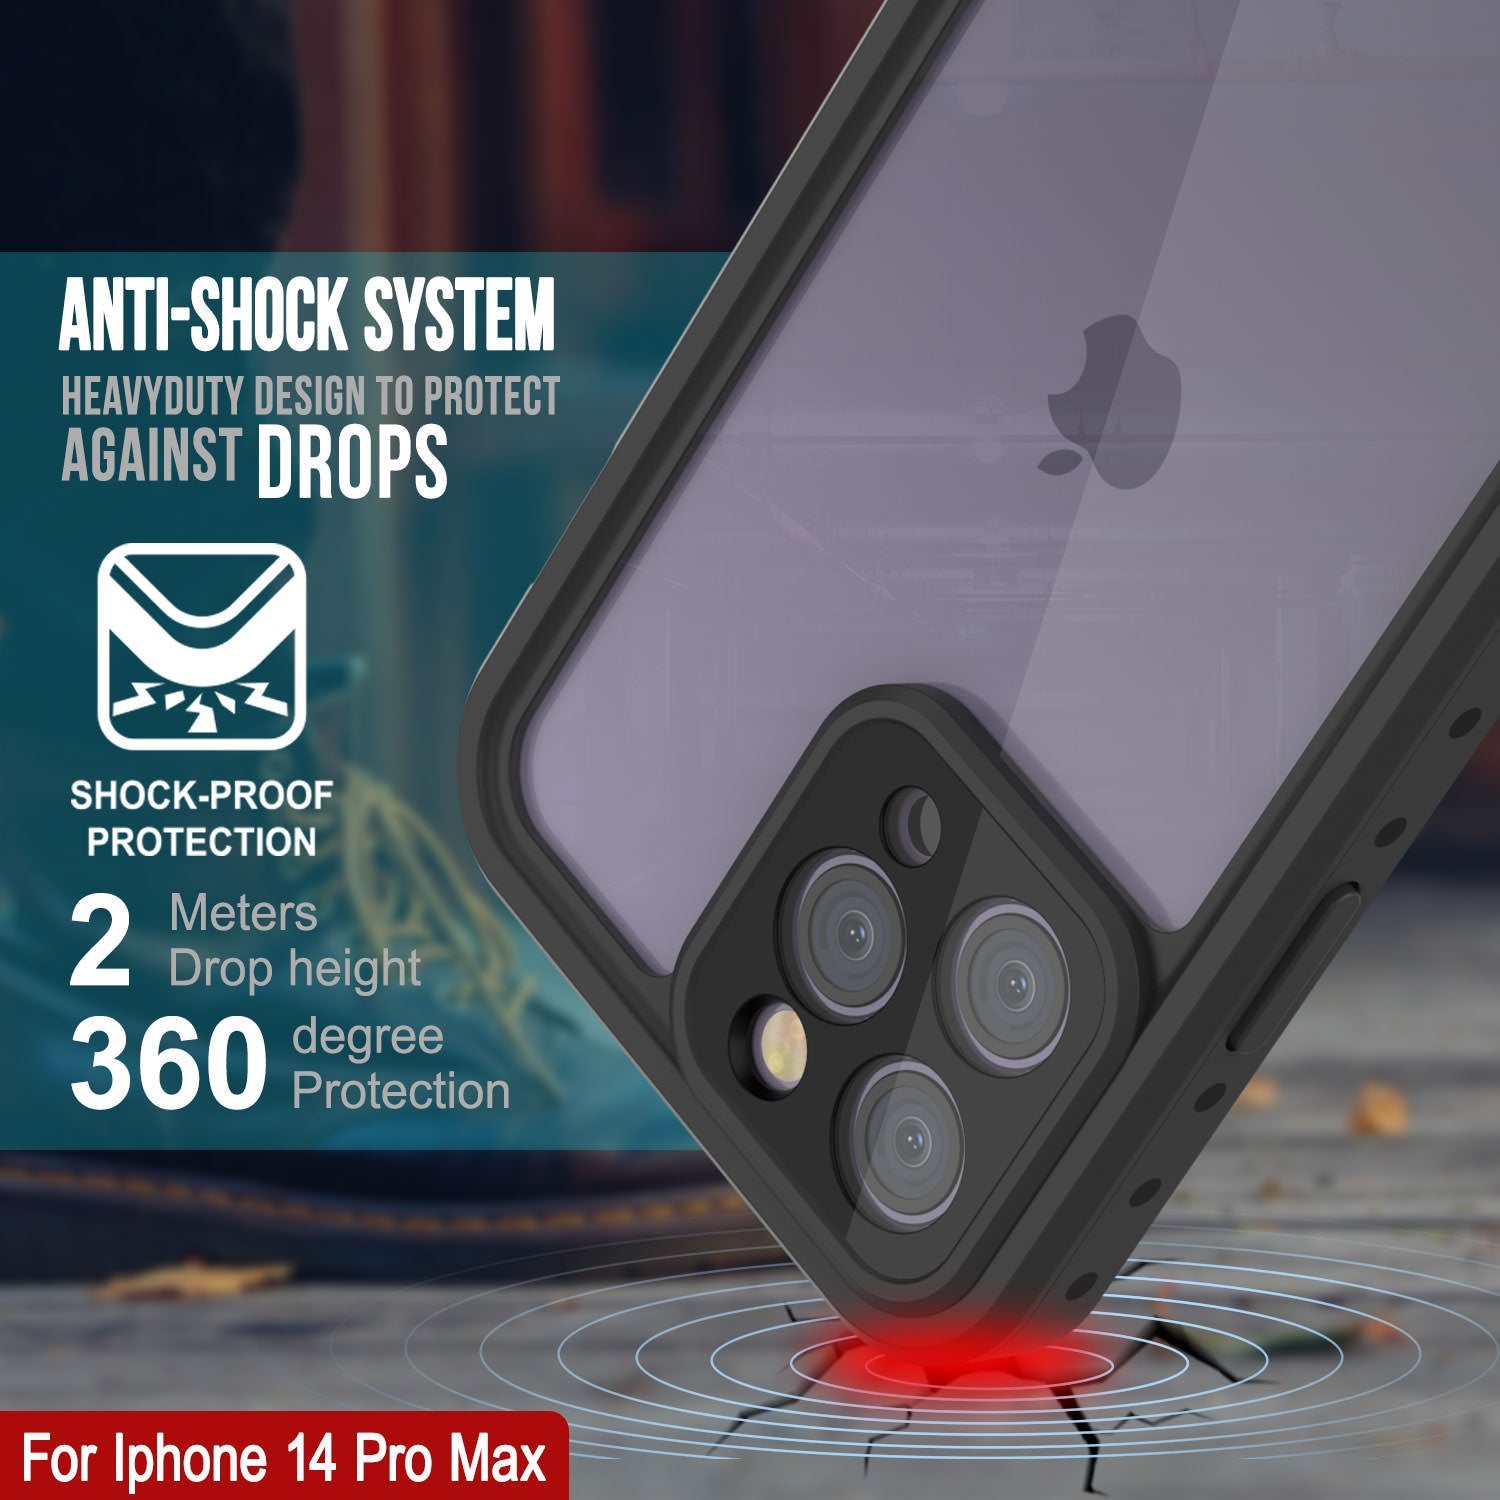 iPhone 14 Pro Max Waterproof IP68 Case, Punkcase [Clear] [StudStar Series] [Slim Fit] [Dirtproof]